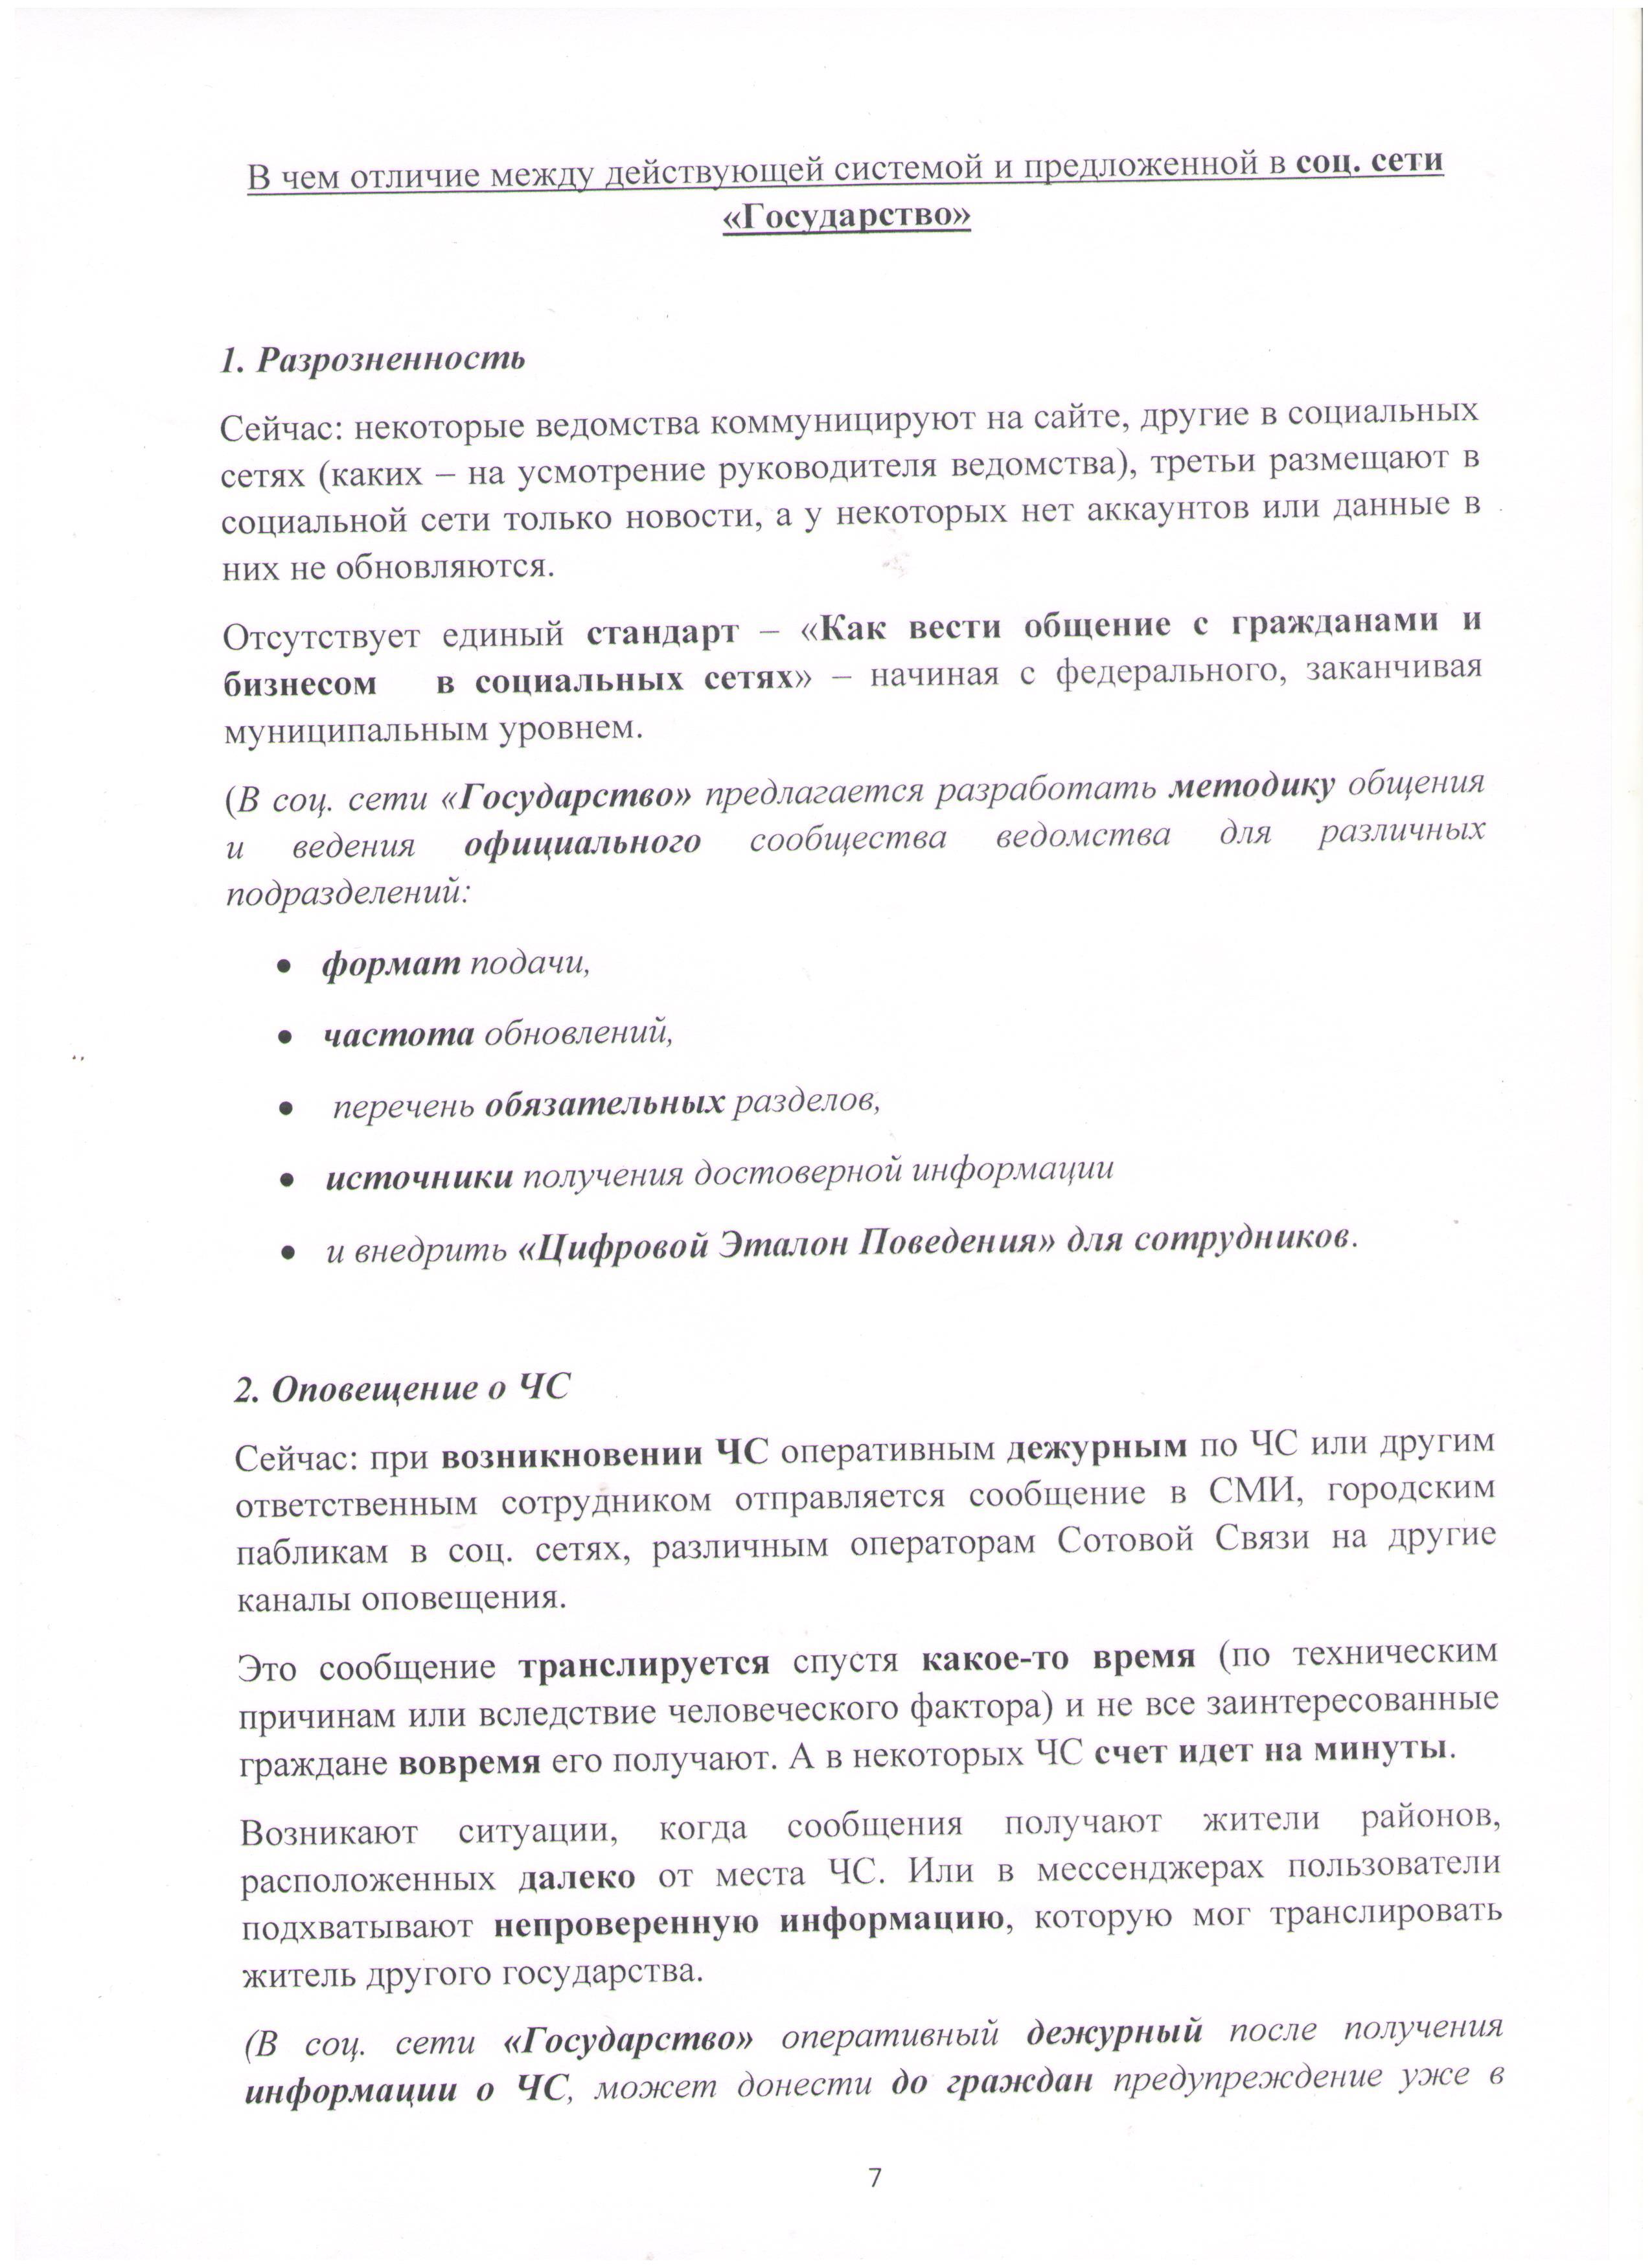 Открытое письмо Президенту РФ Лист 7